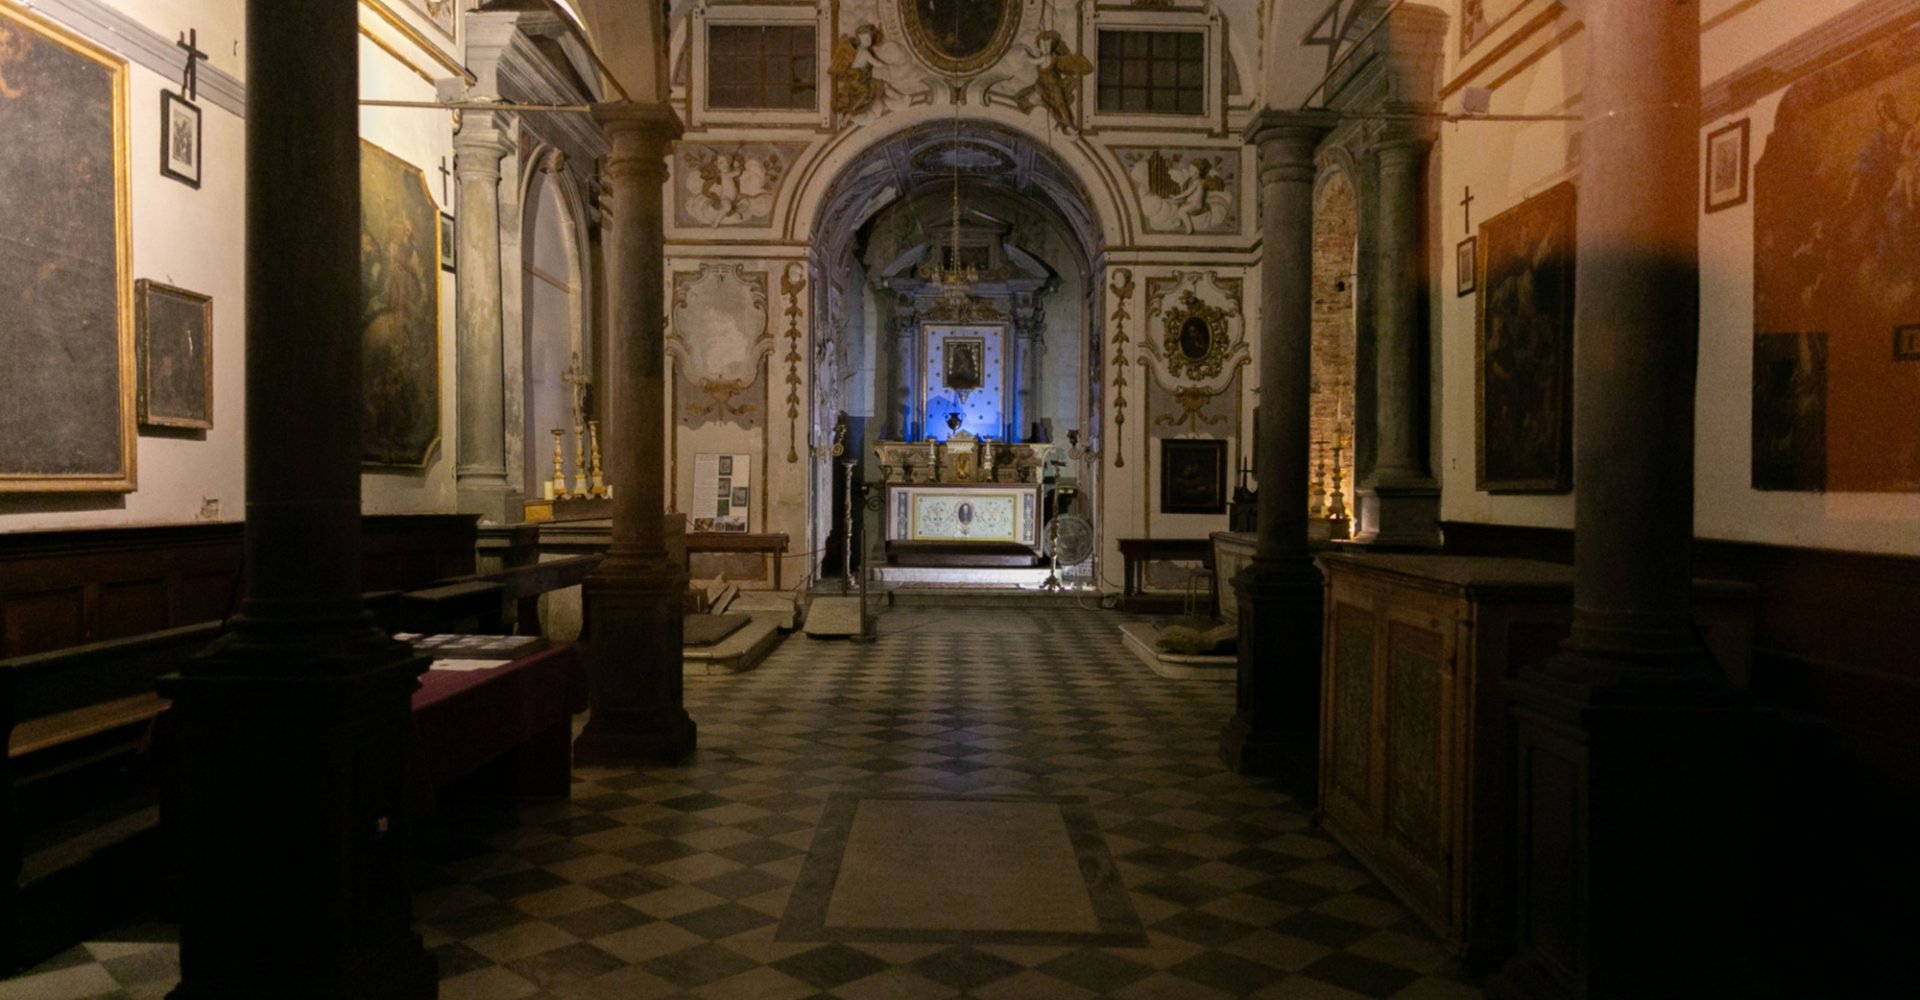 The church and convent of Santa Chiara Castiglion Fiorentino